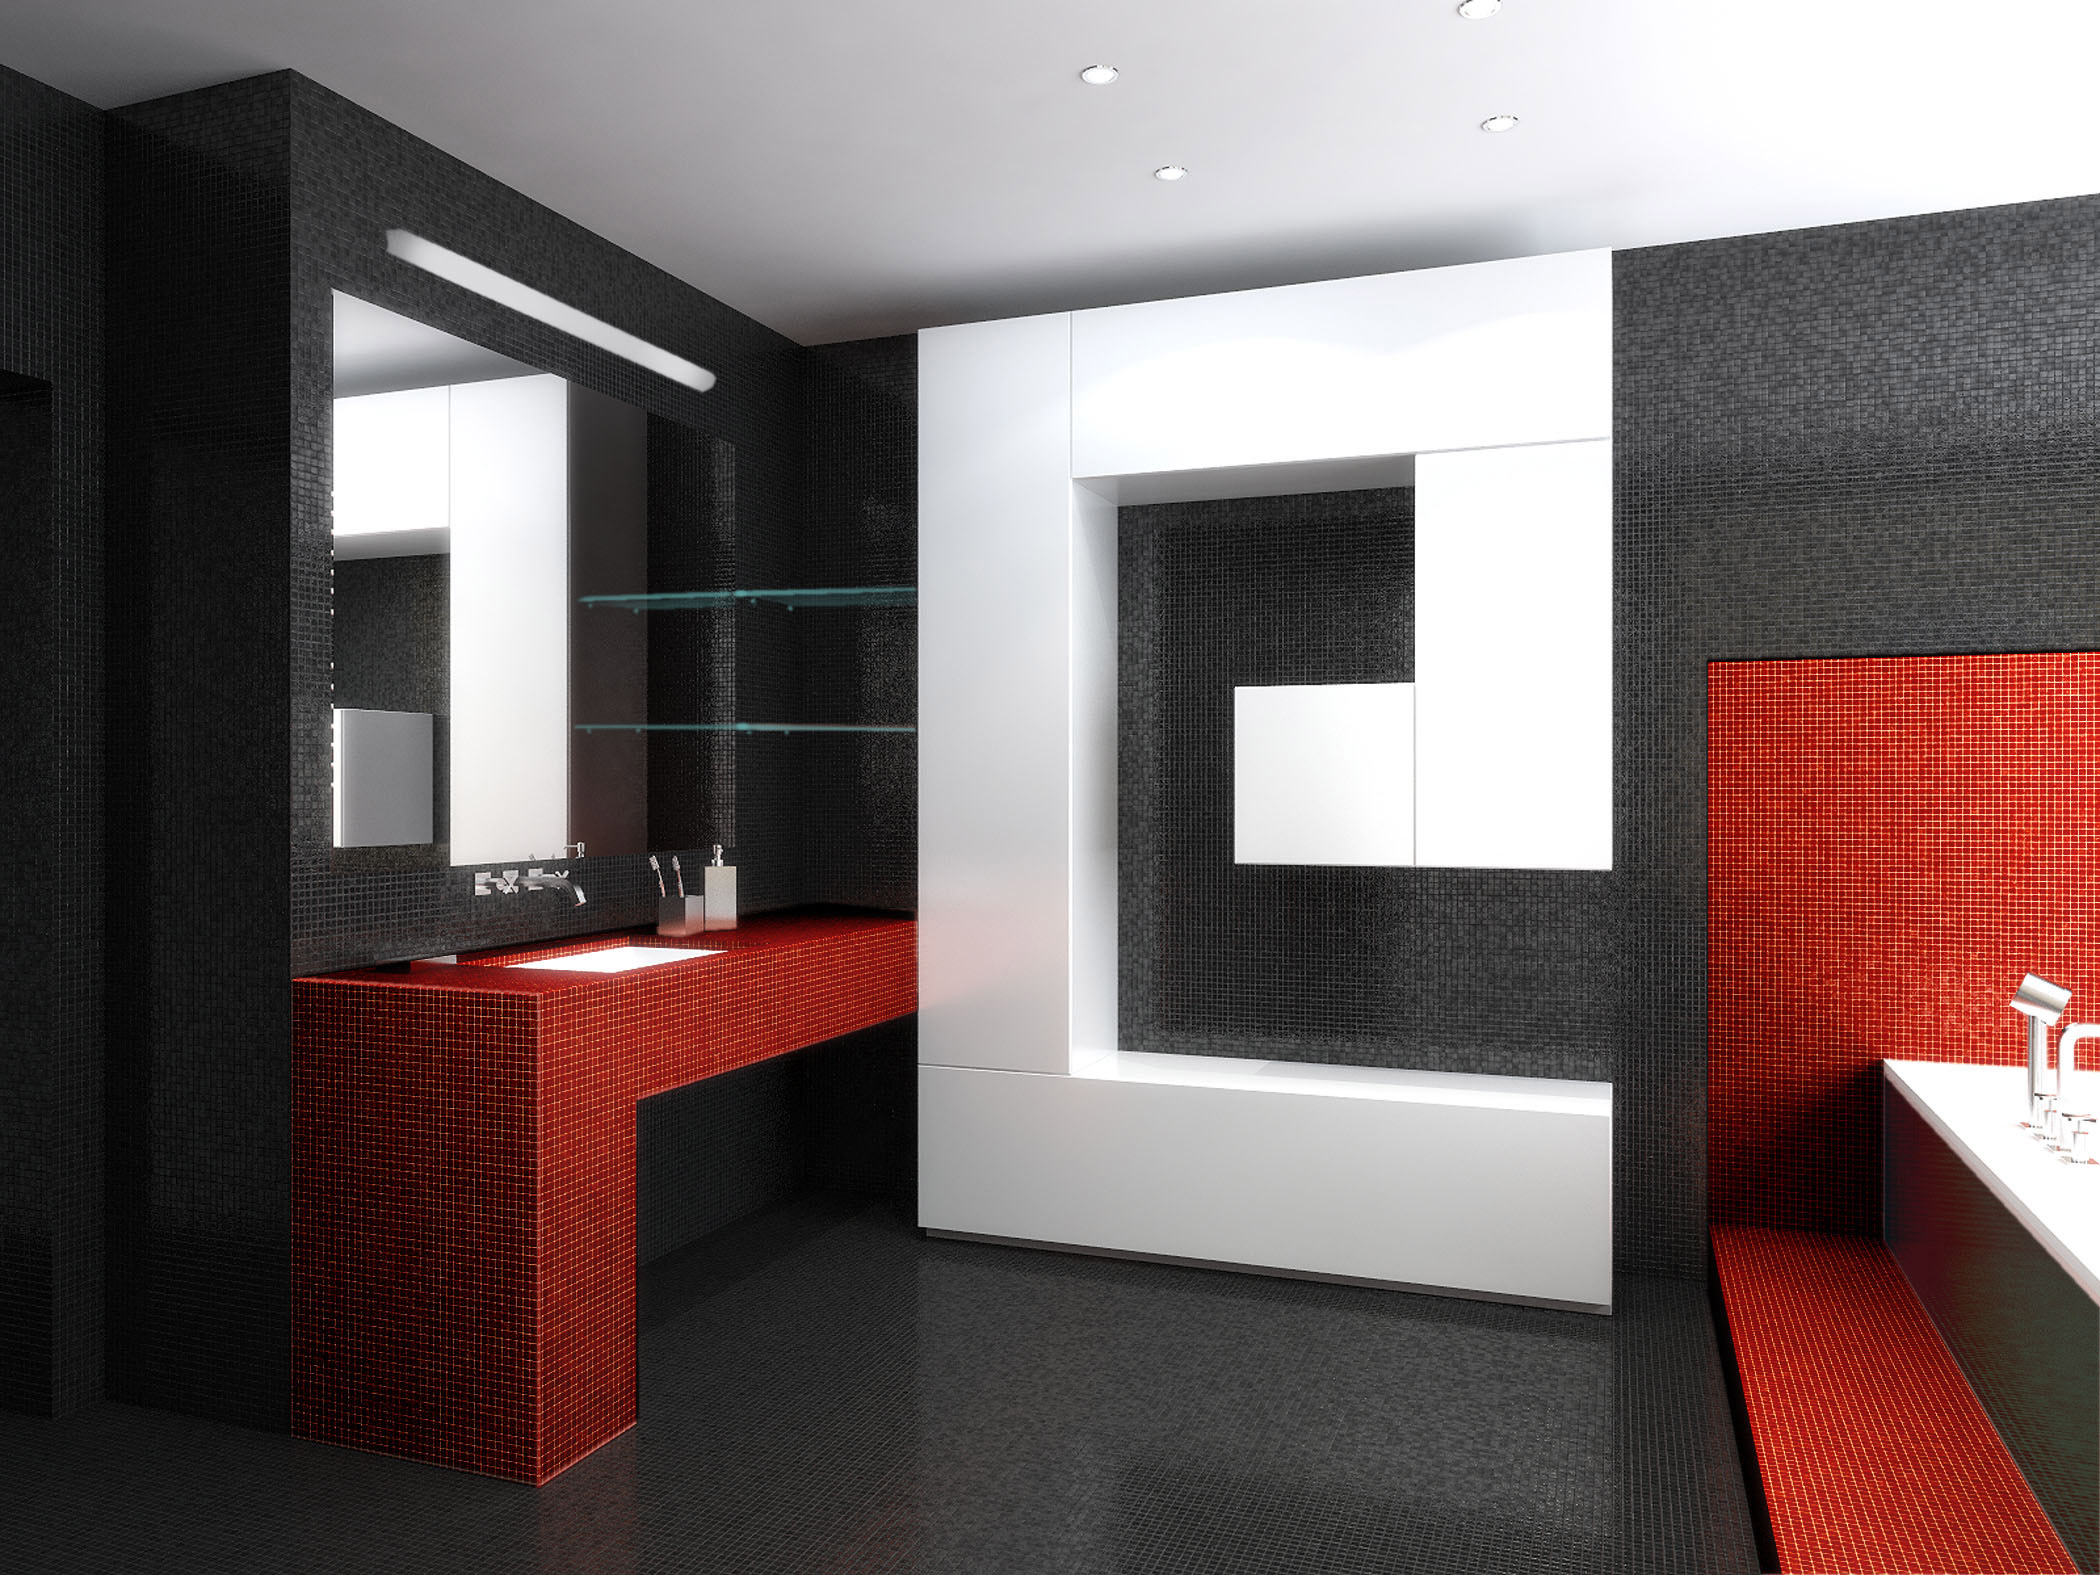 Salle de bain en noir et blanc diluée en rouge